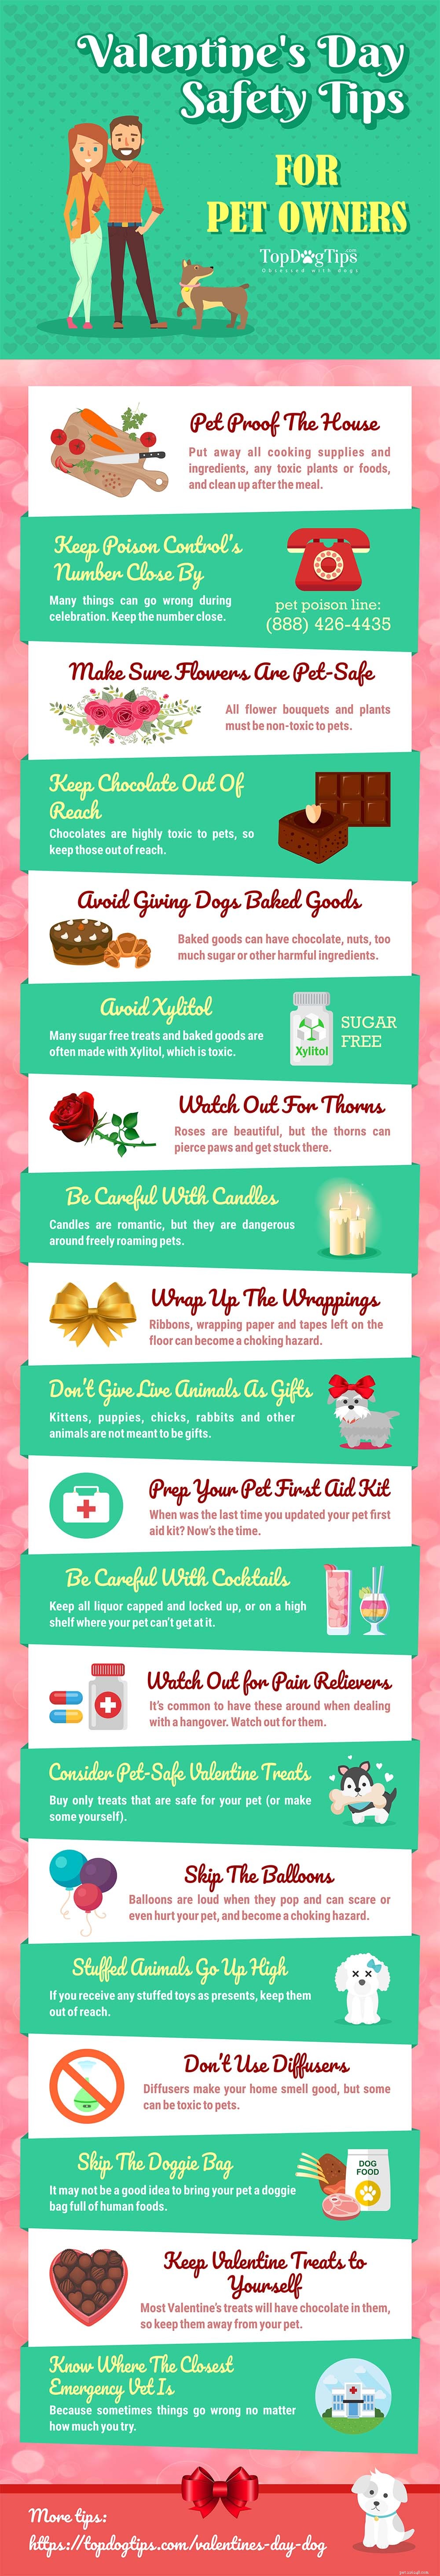 애완동물 주인을 위한 발렌타인 데이 안전 수칙 20가지 [Infographic]